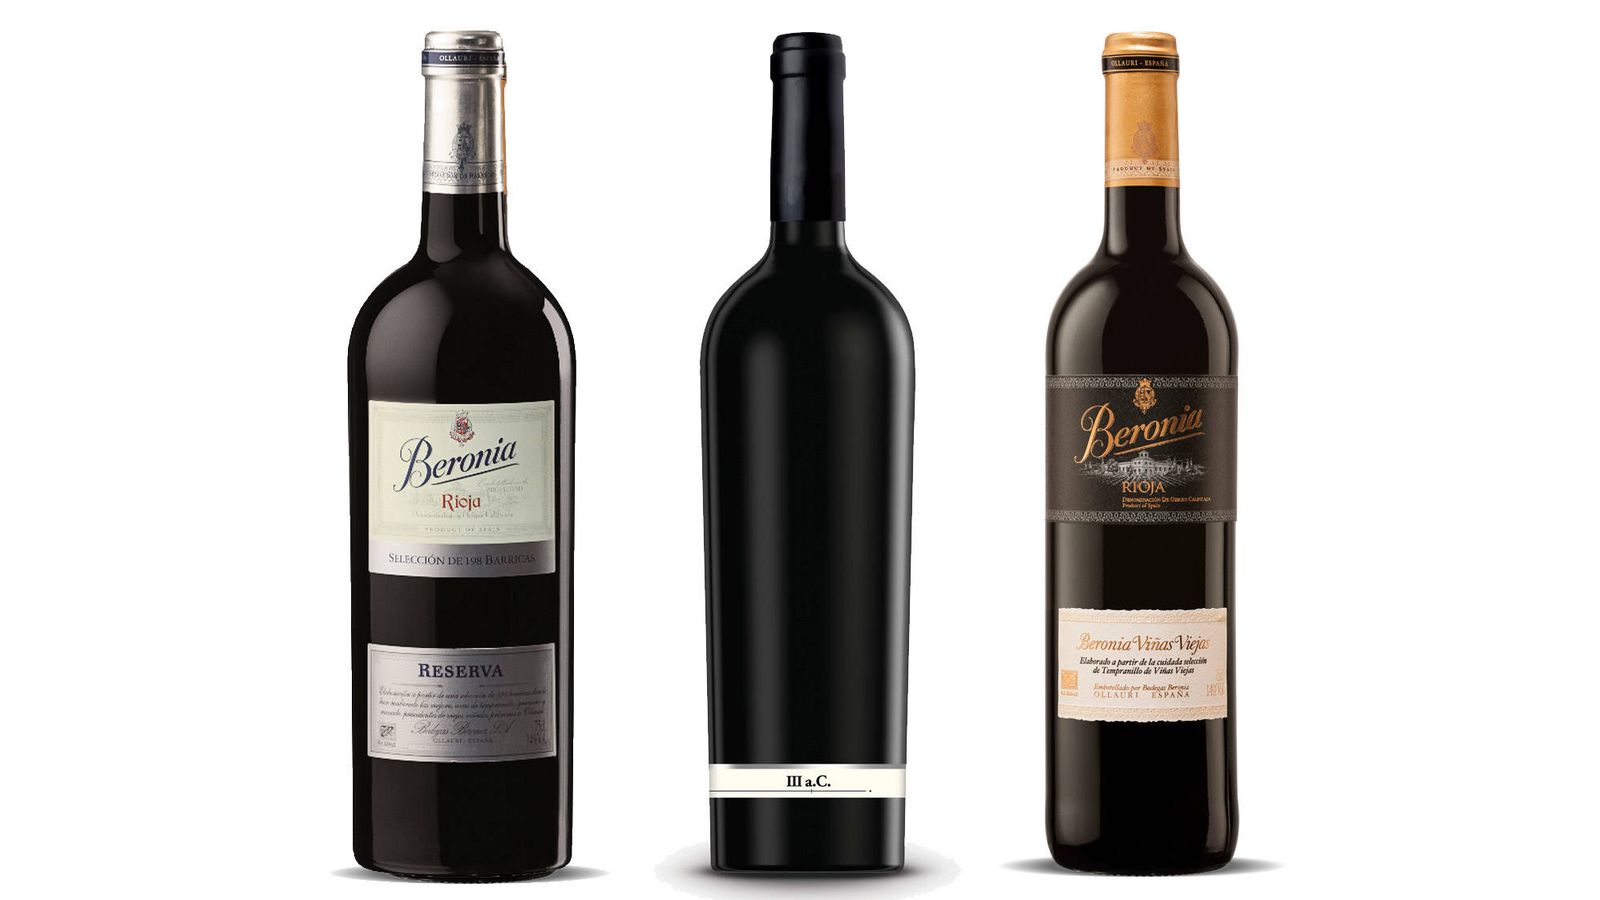 Los tres vinos campeones de Beronia